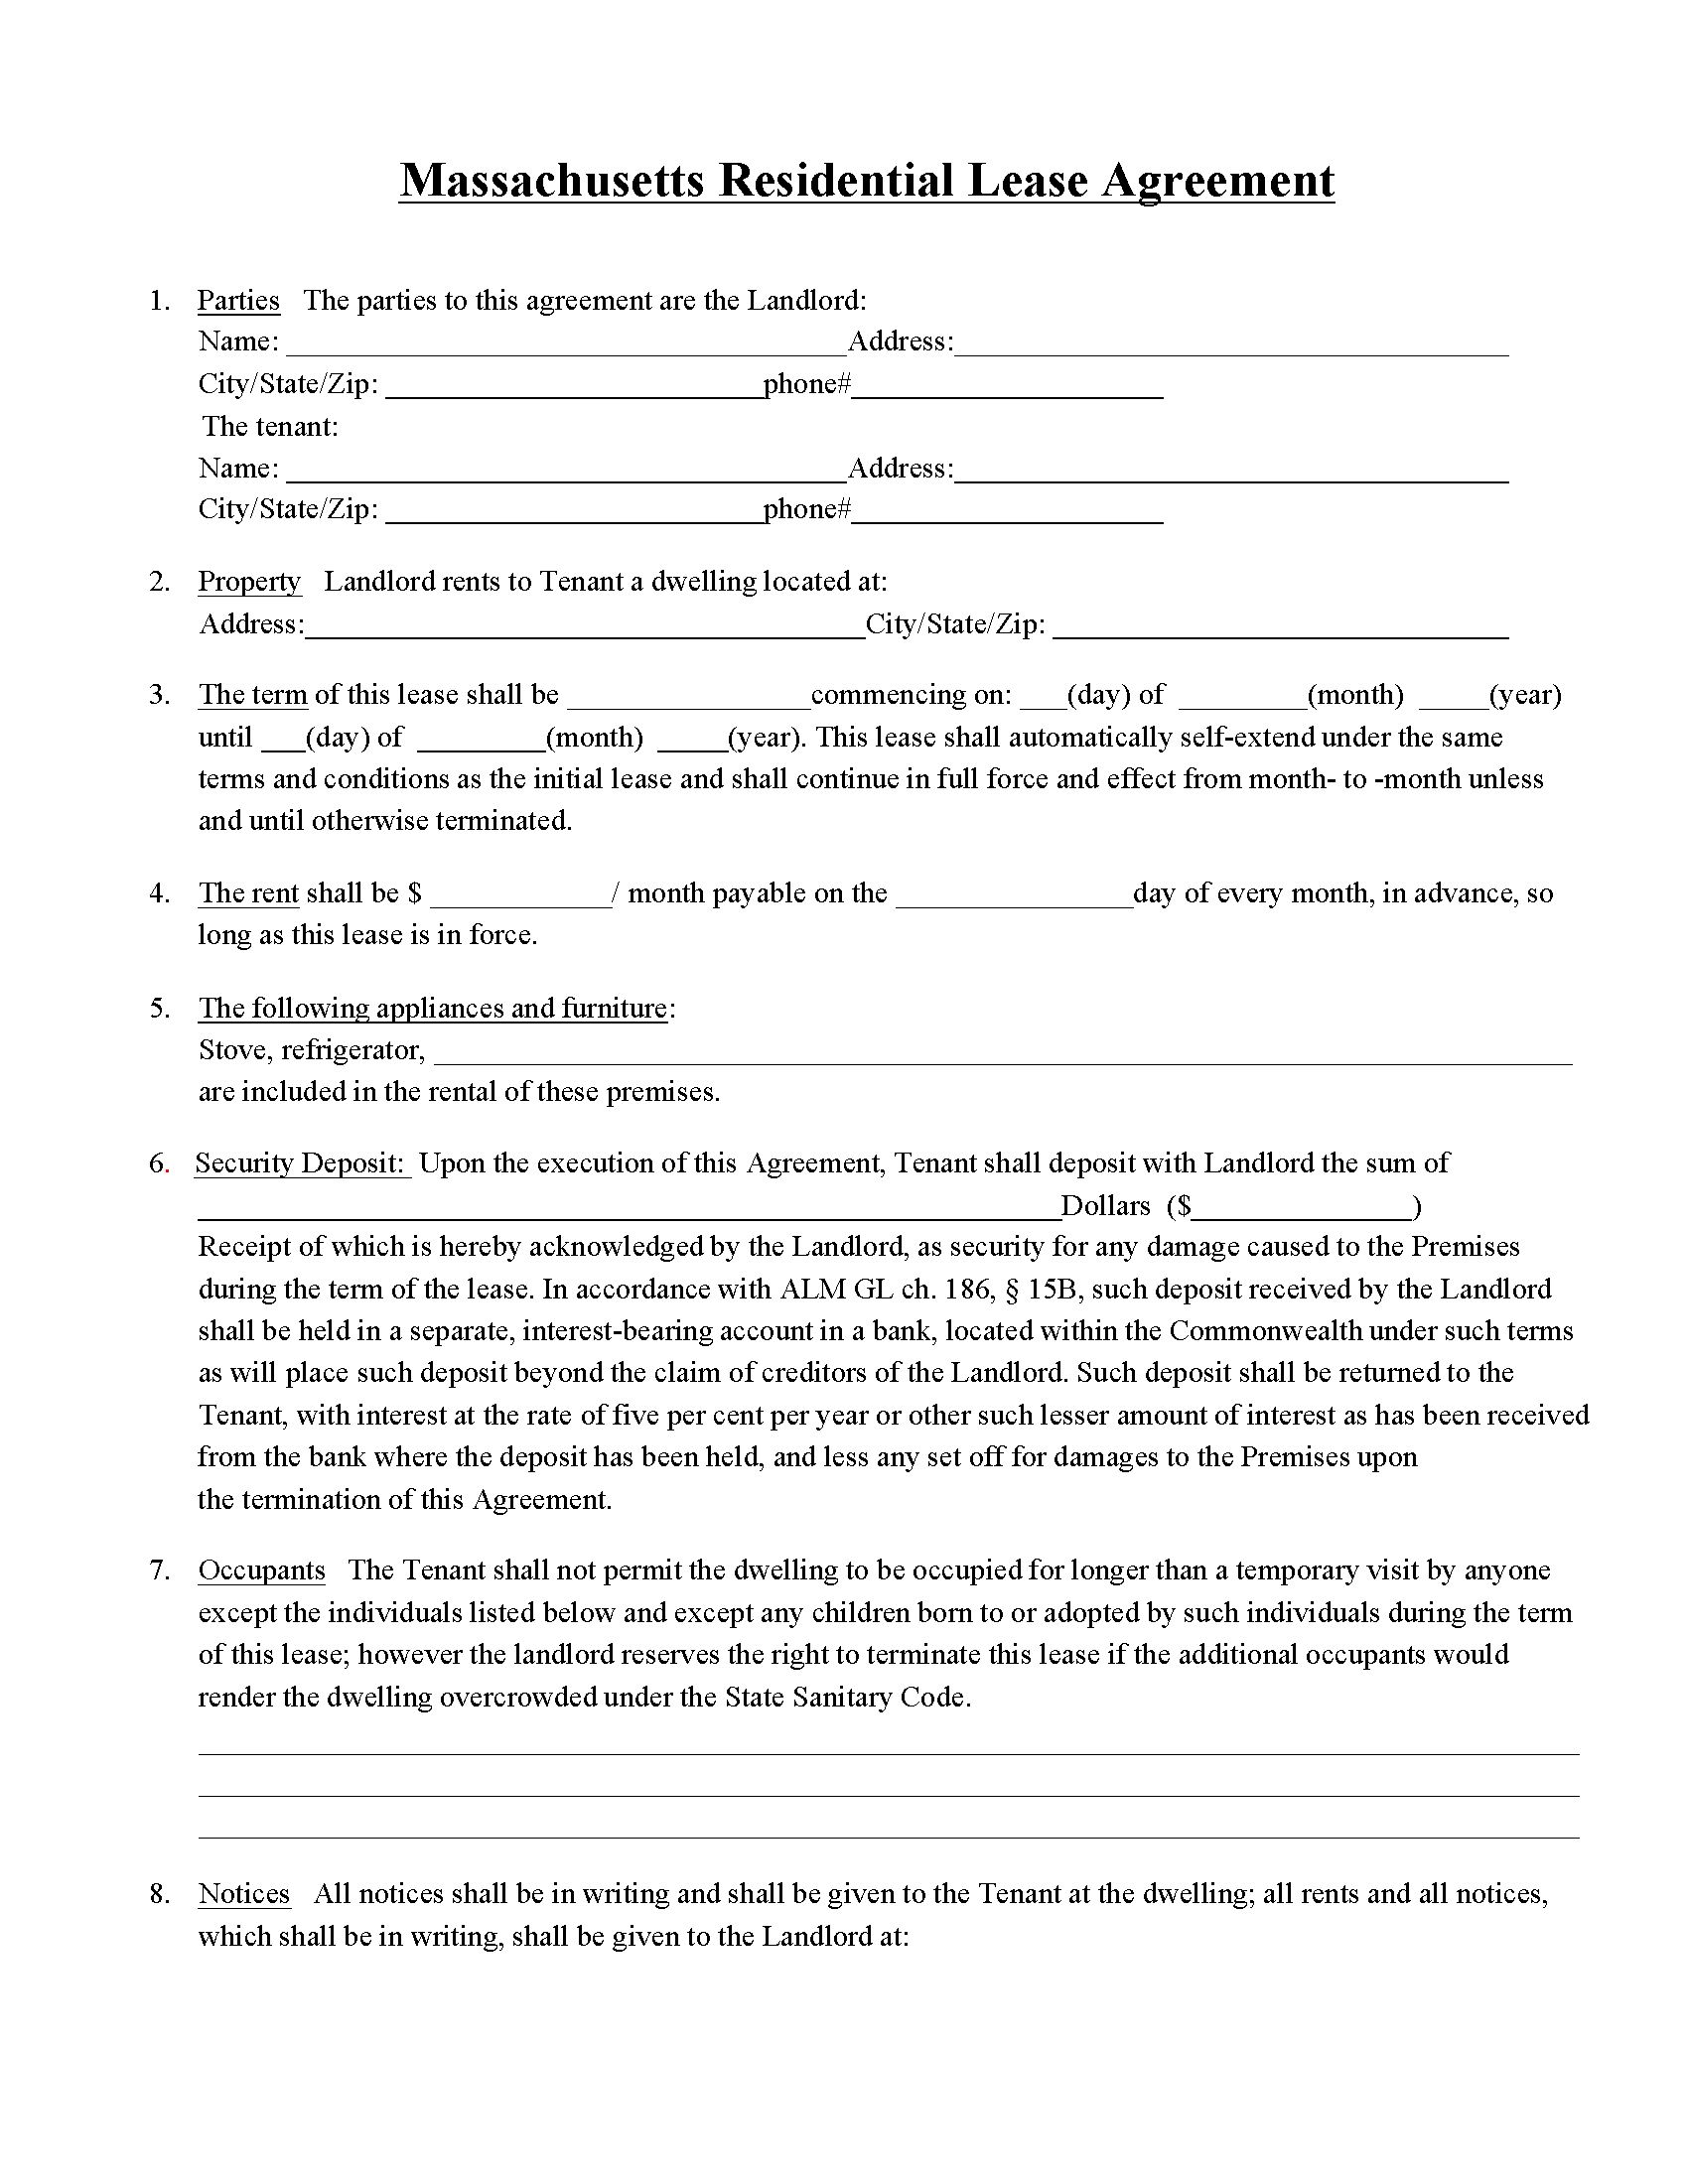 free-massachusetts-residential-lease-agreement-pdf